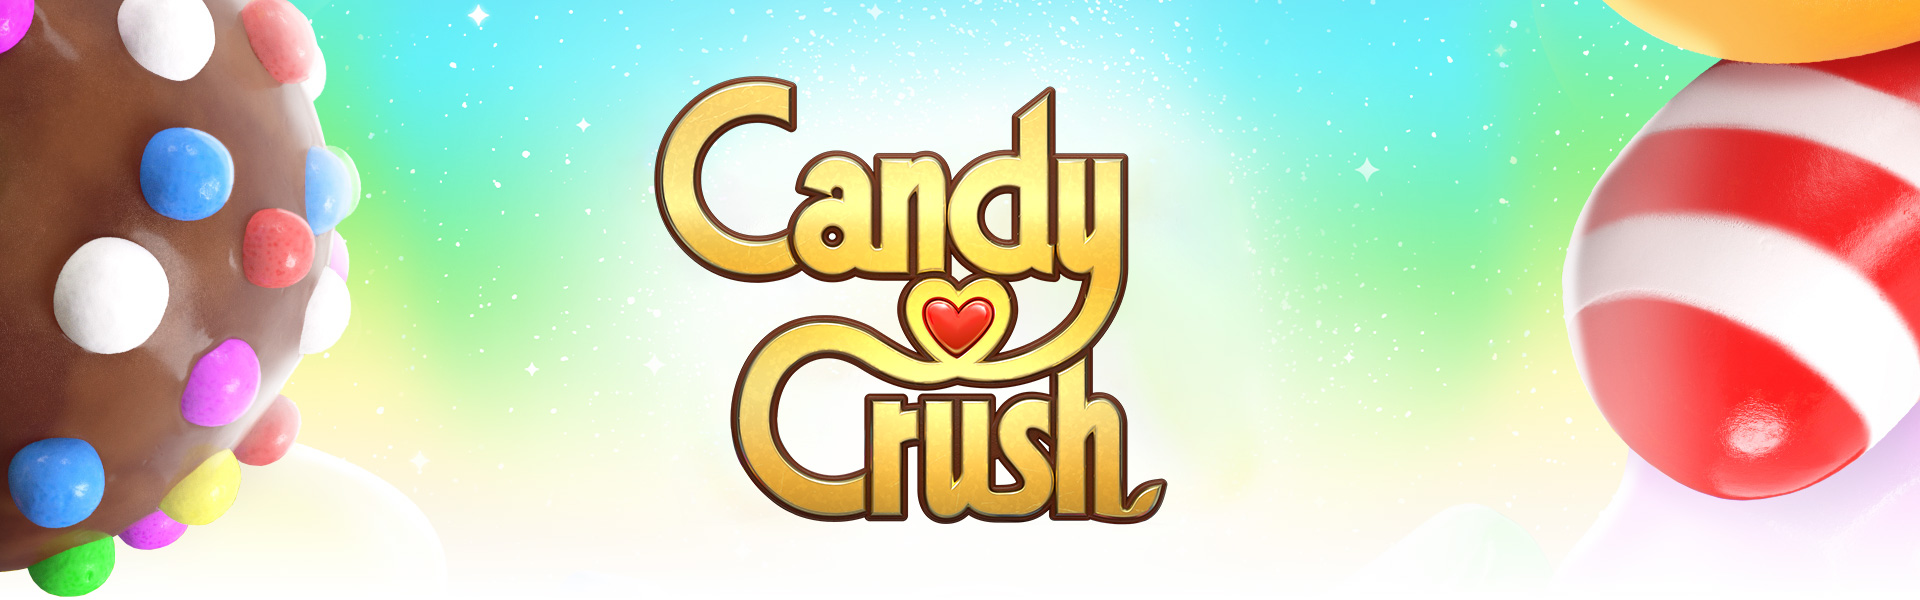 各種巧克力和糖果圍繞著 Candy crush 標誌